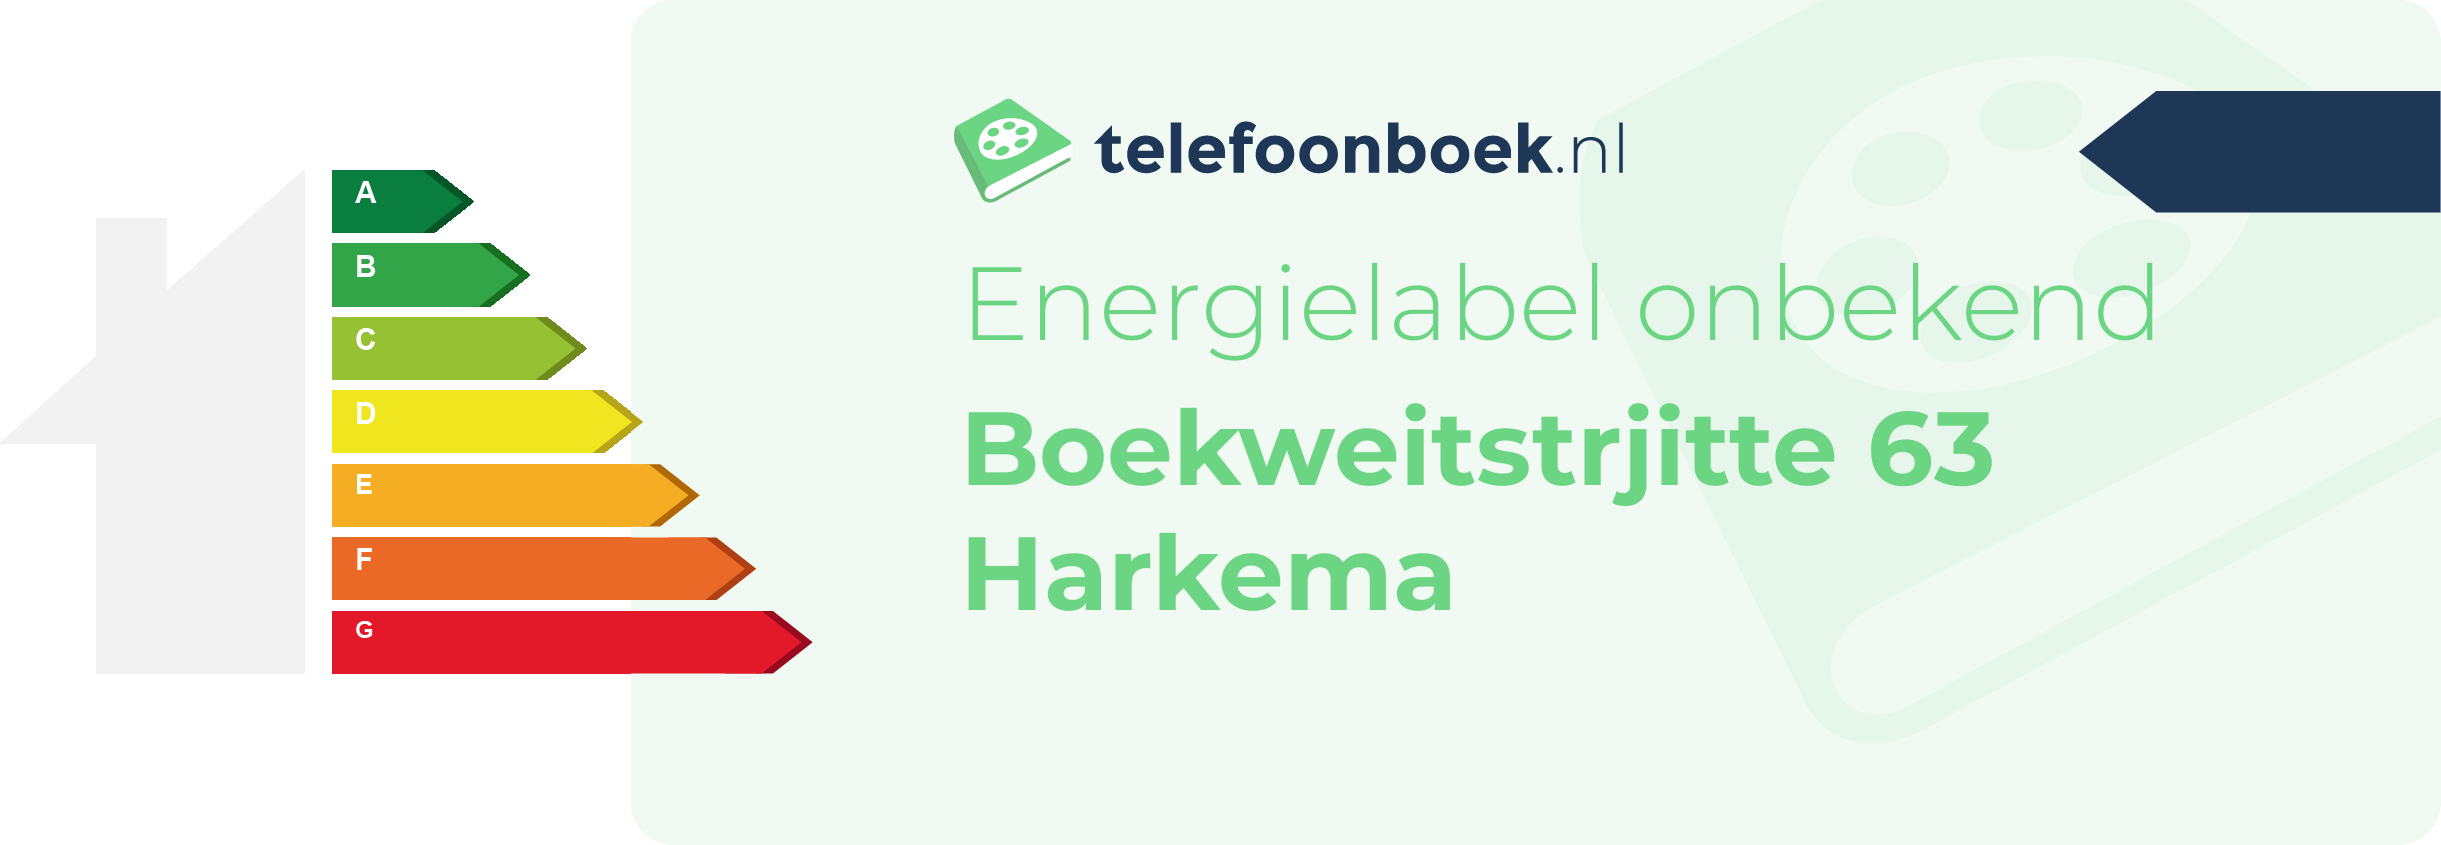 Energielabel Boekweitstrjitte 63 Harkema